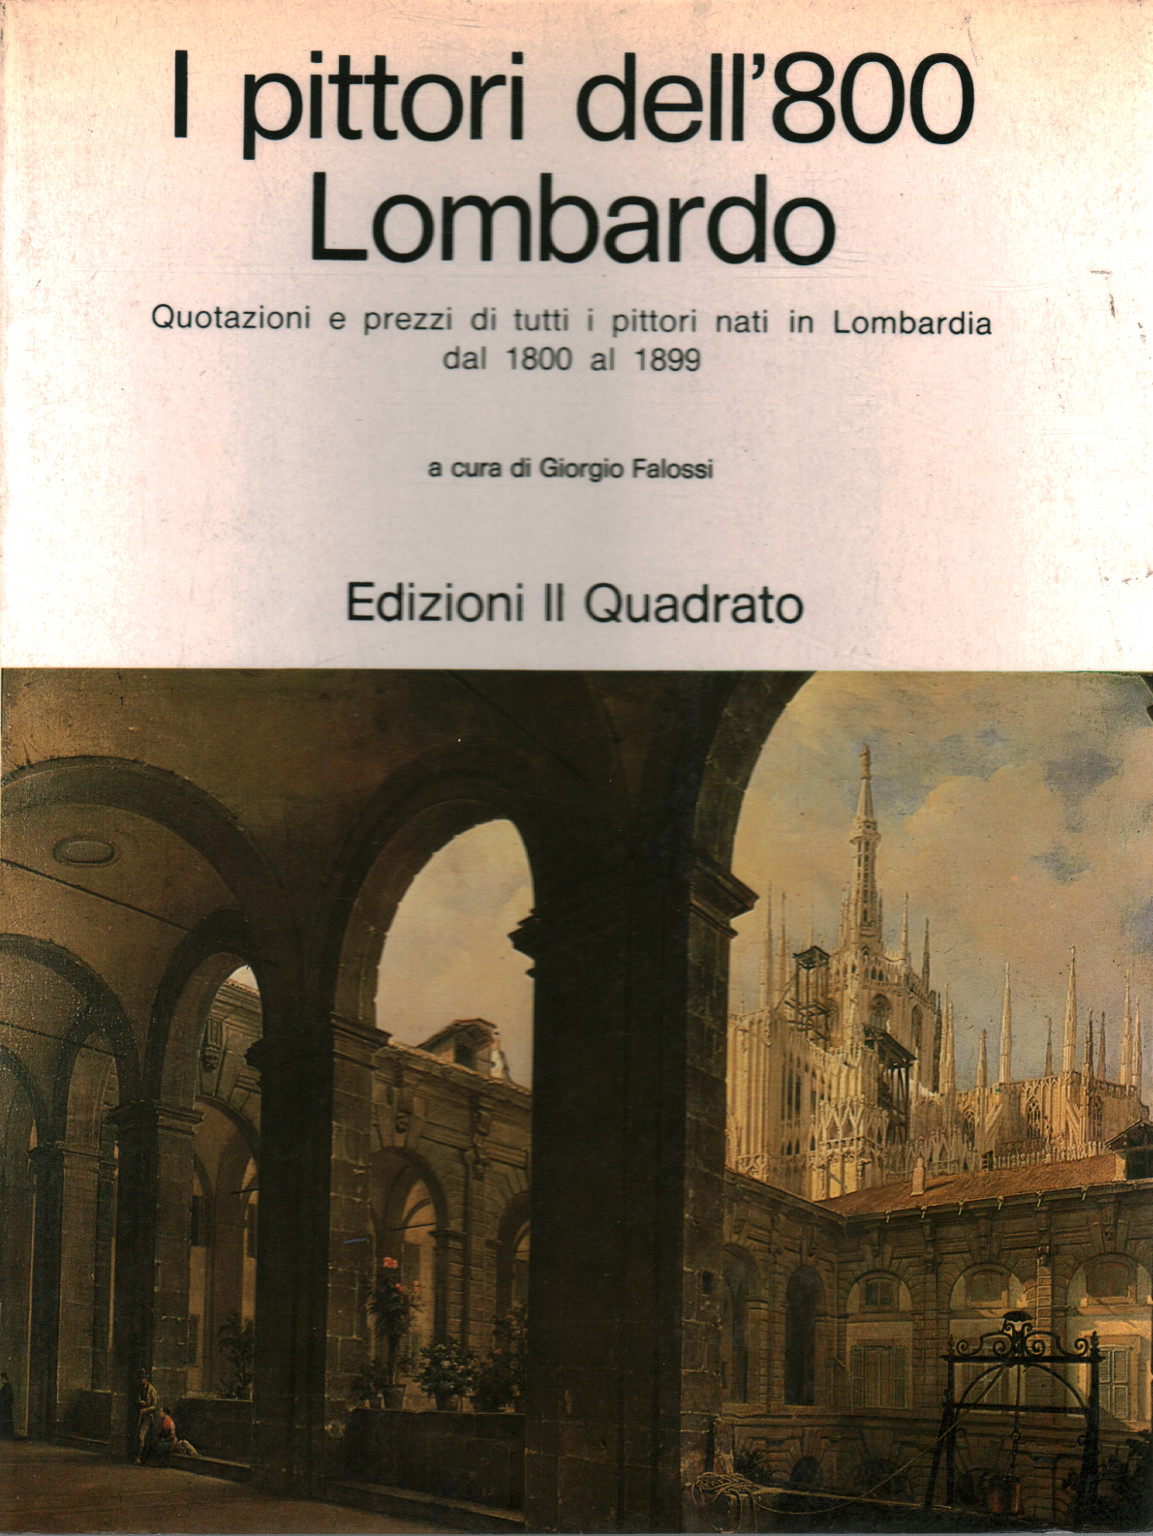 I pittori dell'800 Lombardo, s.a.